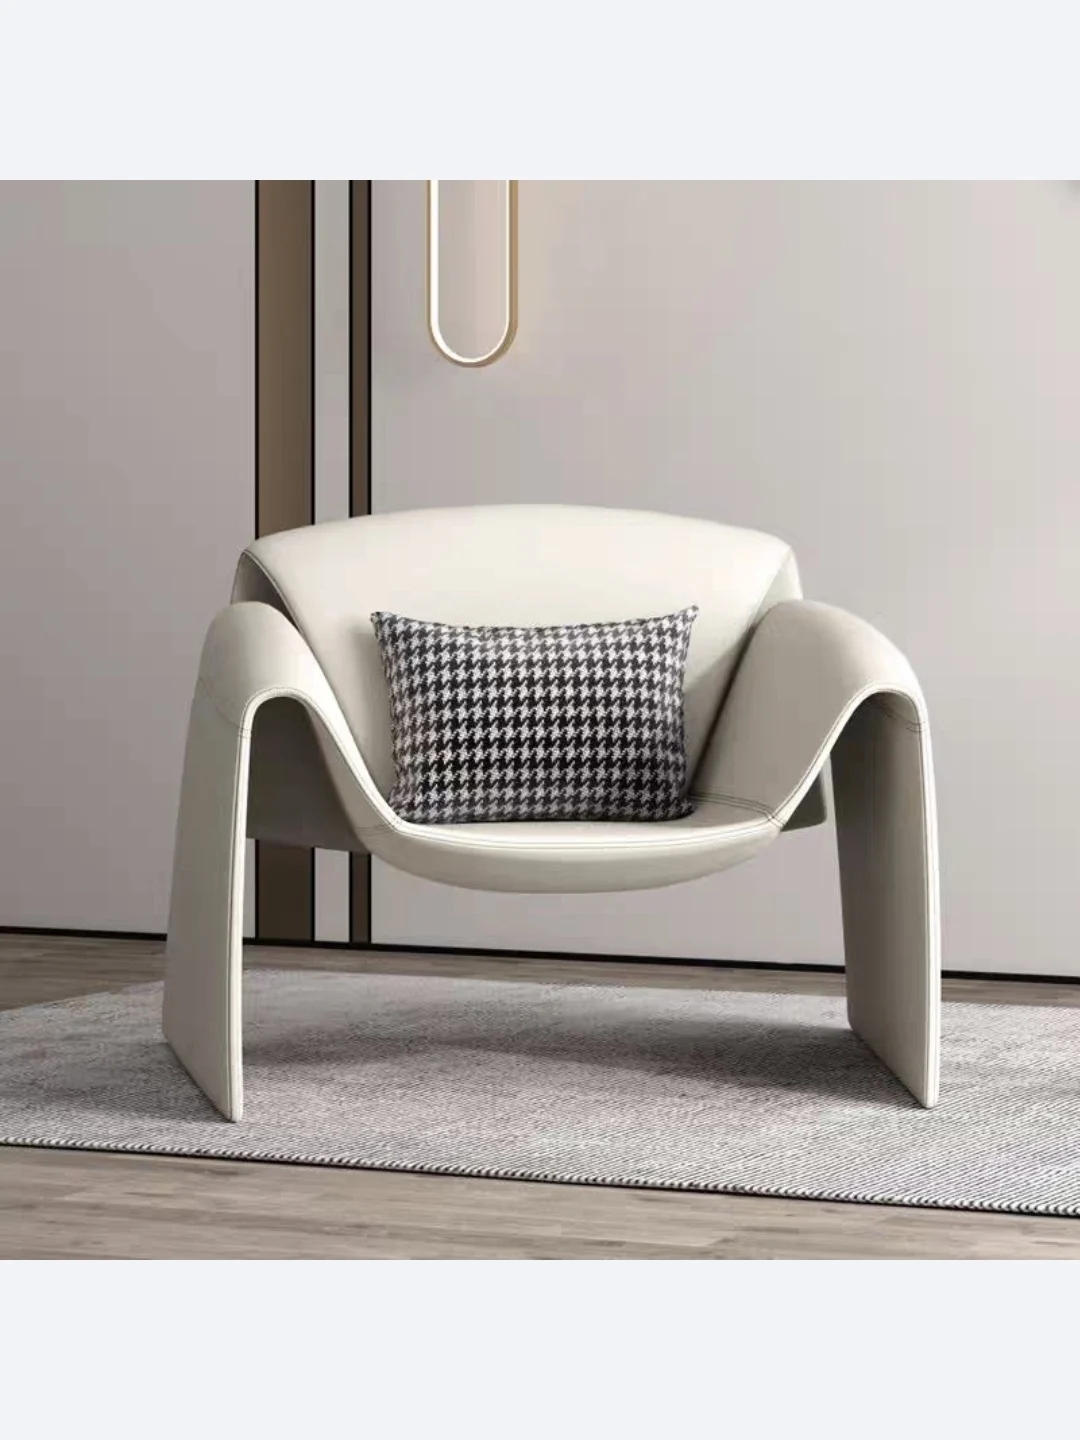 

Диван домашний на одного человека, креативное кресло-краб для отдыха в итальянском минималистическом стиле, для гостиницы, гостиной, балкона, офиса, Интернет-знаменитостей